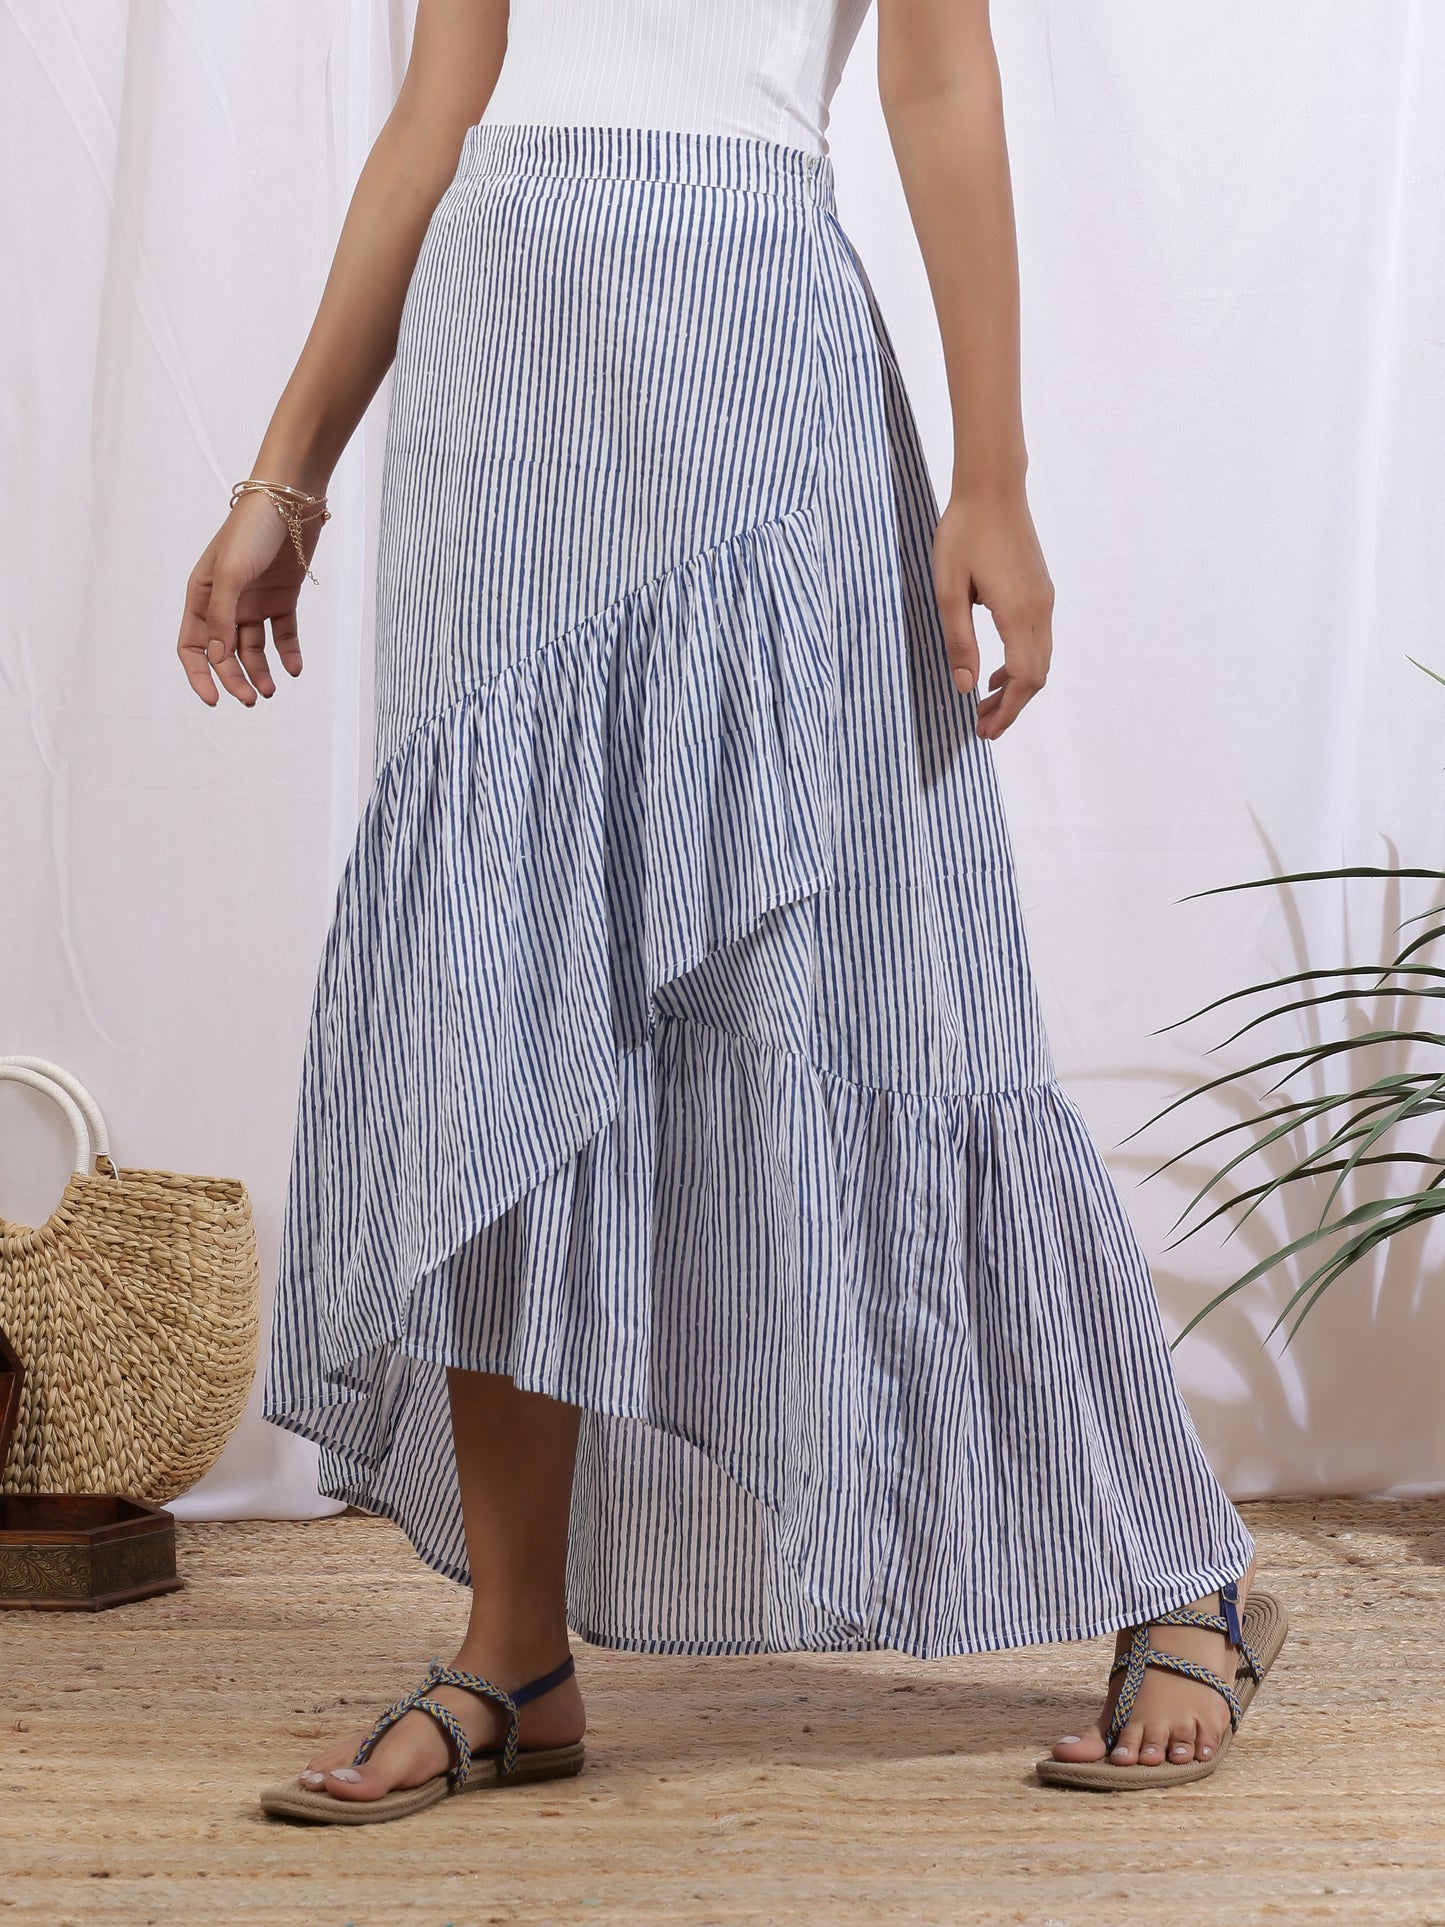 Ciel Skirt - Blue Hand Block Printed Cotton Ruffle Skirt